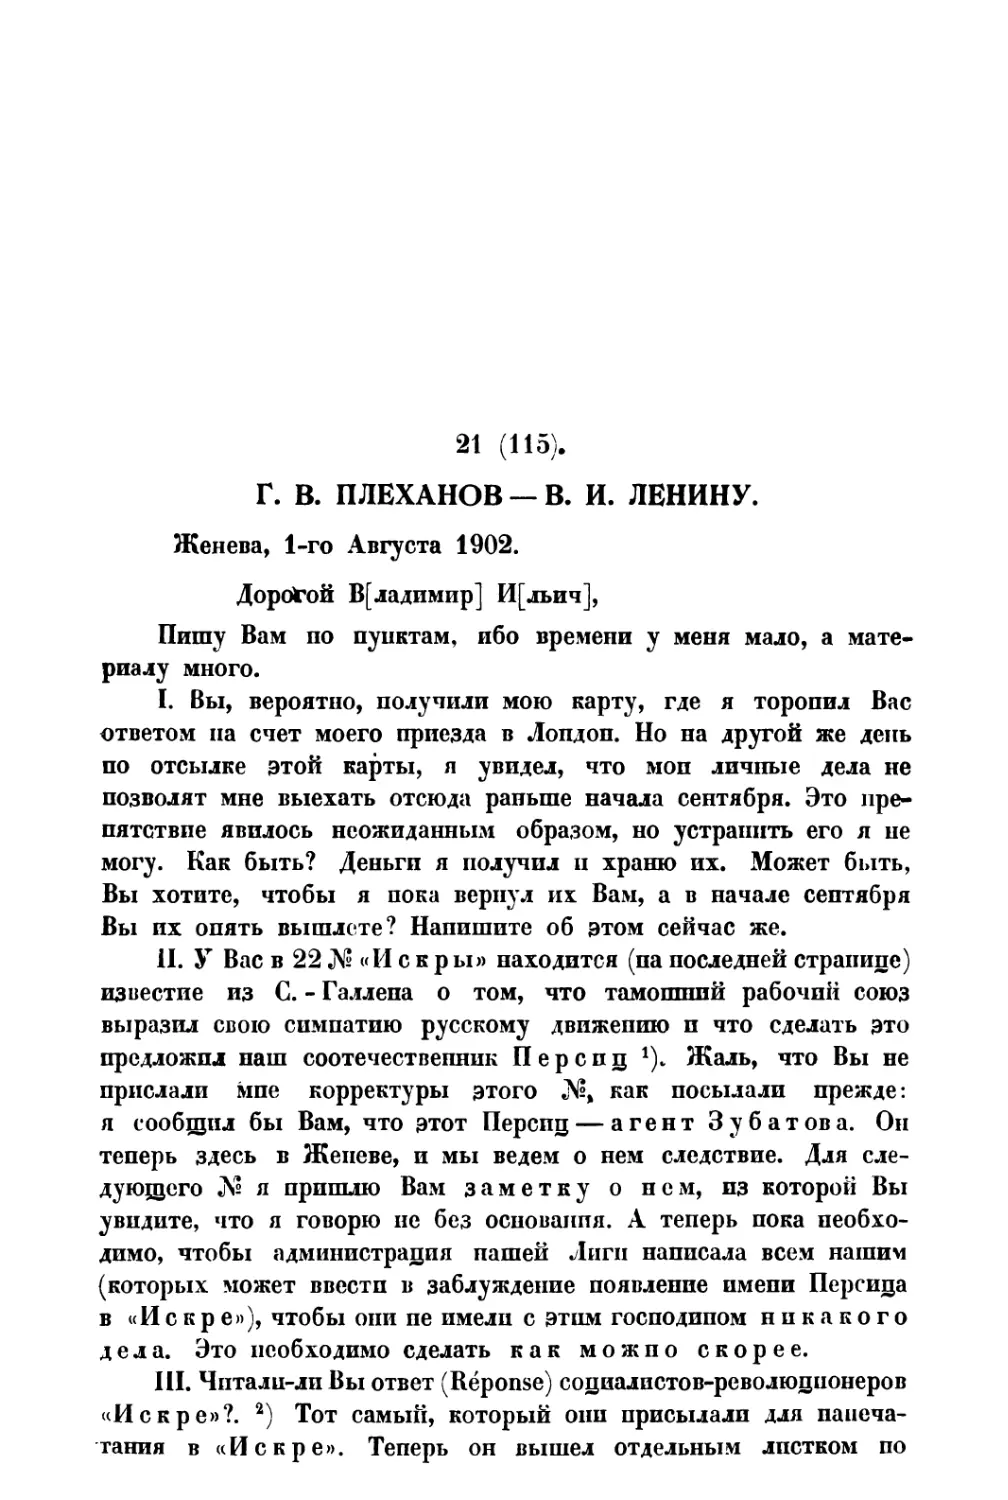 21. Г. В. Плеханов — В. И. Ленину от 1 VIII 1902 г